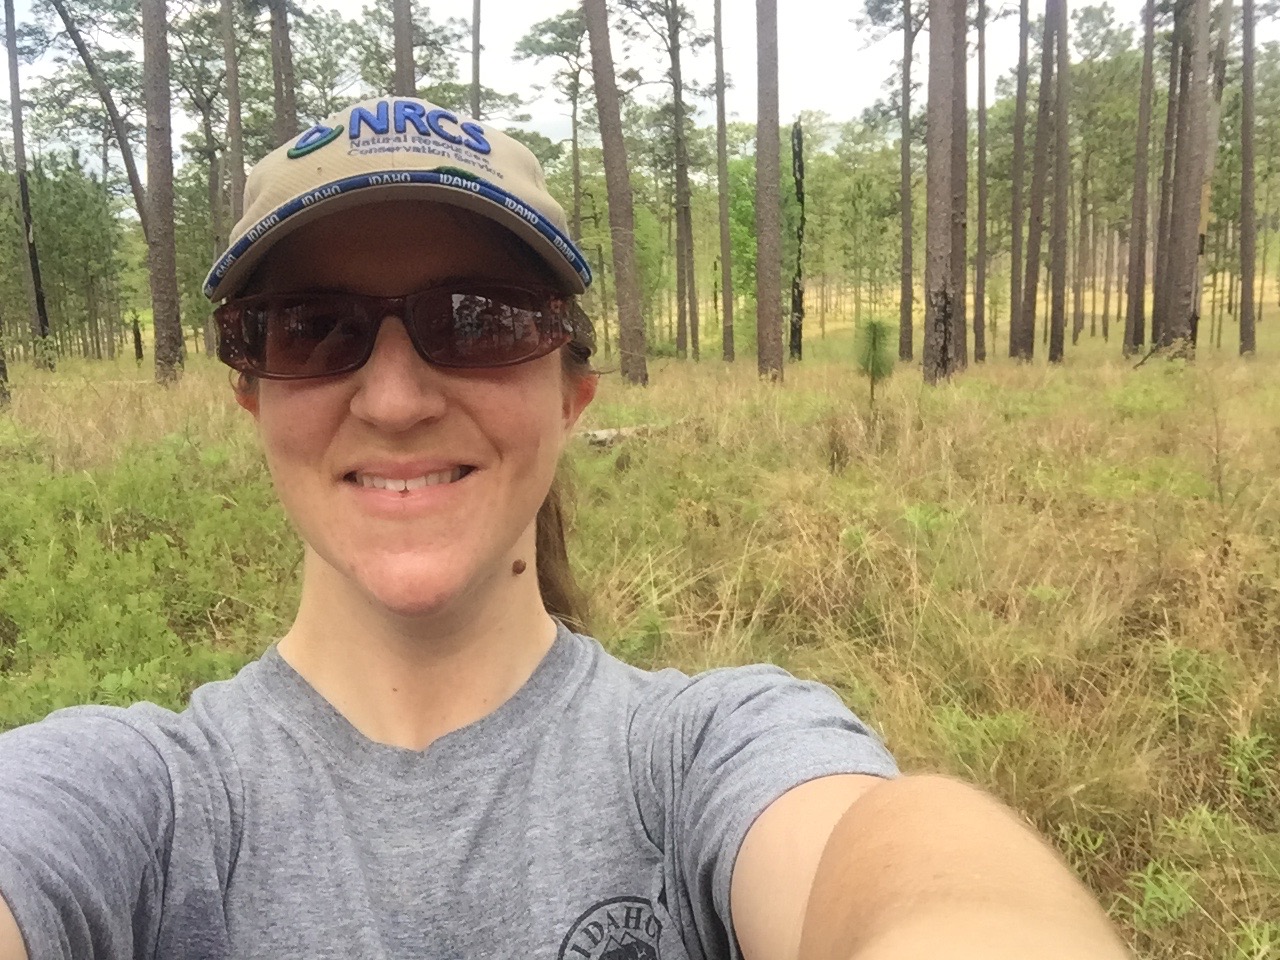 Dewind Awardee, Molly Wiebush taking a selfie in a forest.